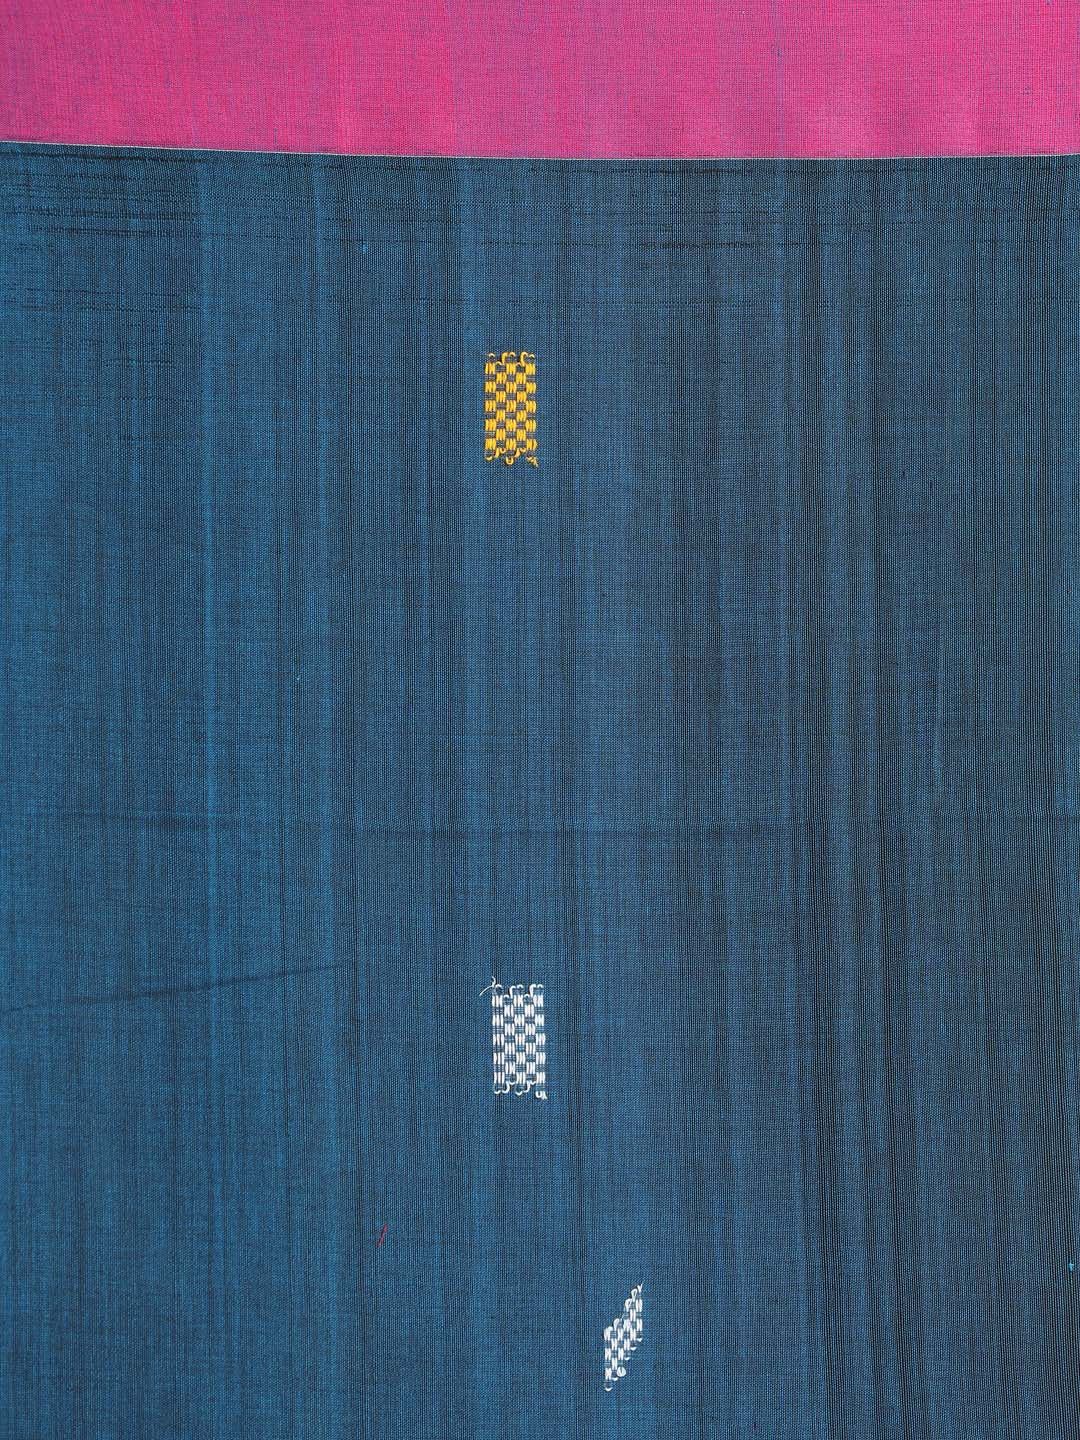 Indethnic Blue Bengal Handloom Pure Cotton Saree Work Saree - Saree Detail View